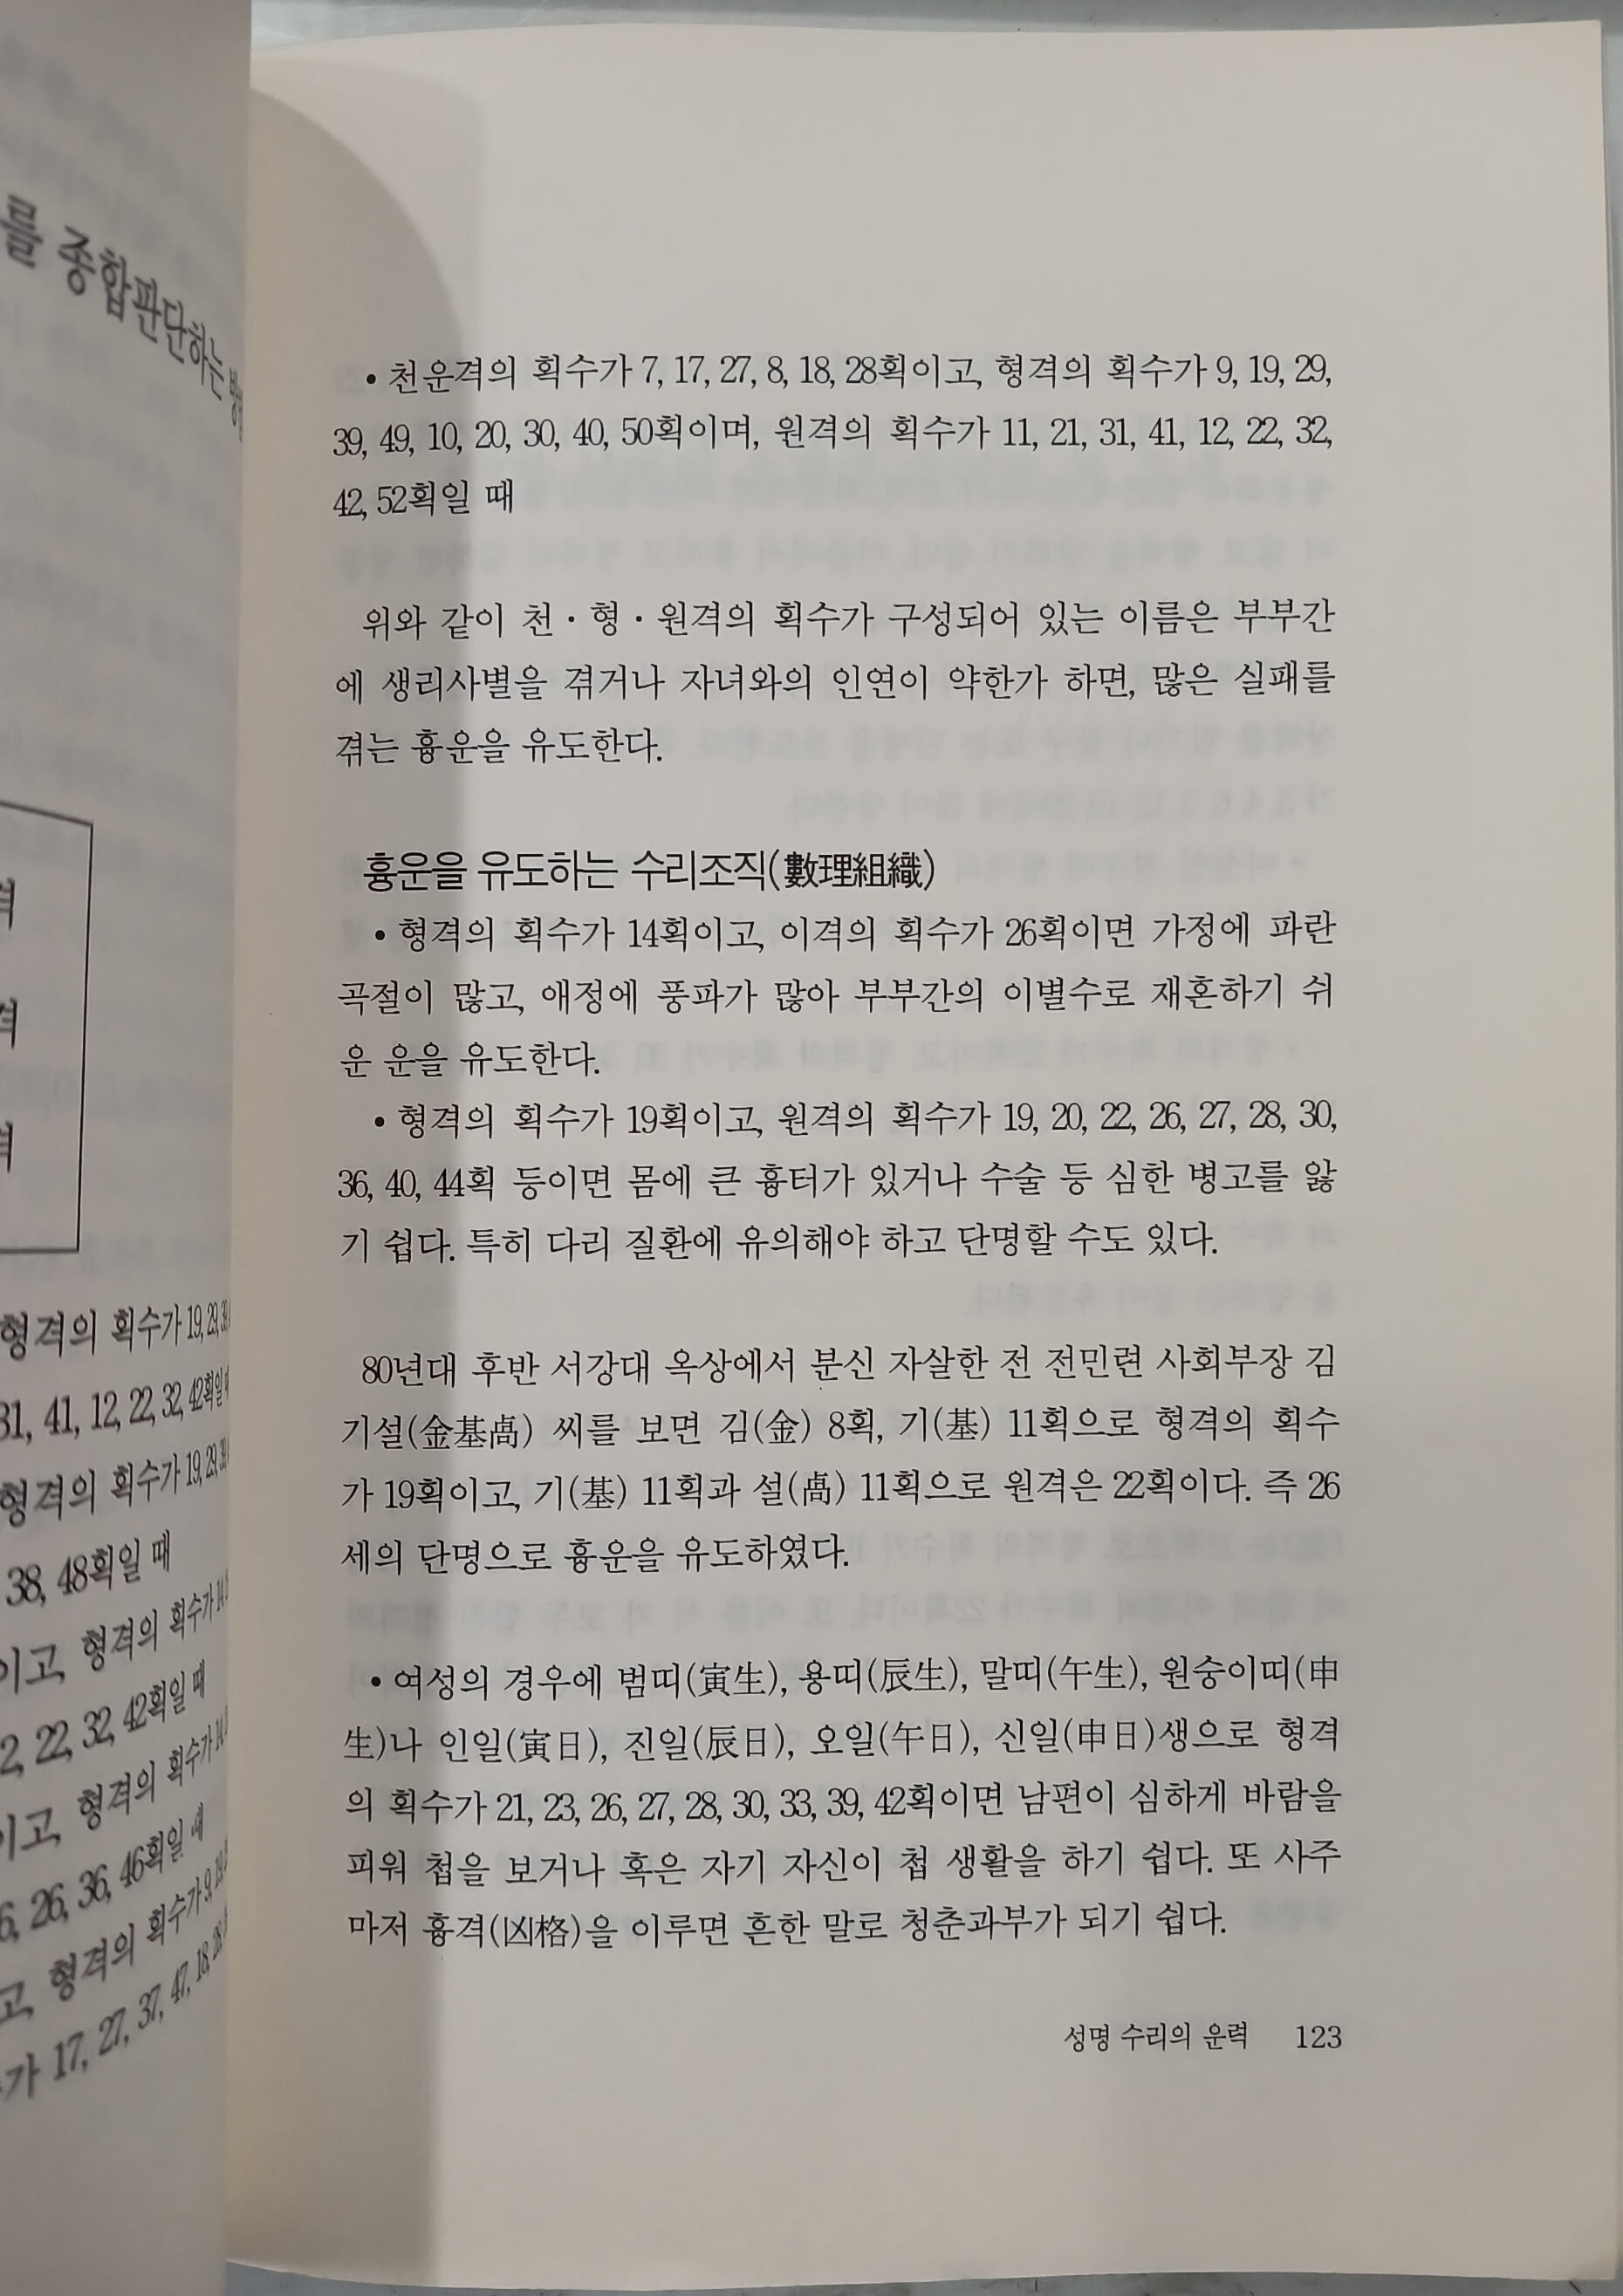 김광일성명학 - 이름이 평생운명을 좌우한다 | 1999년 초판